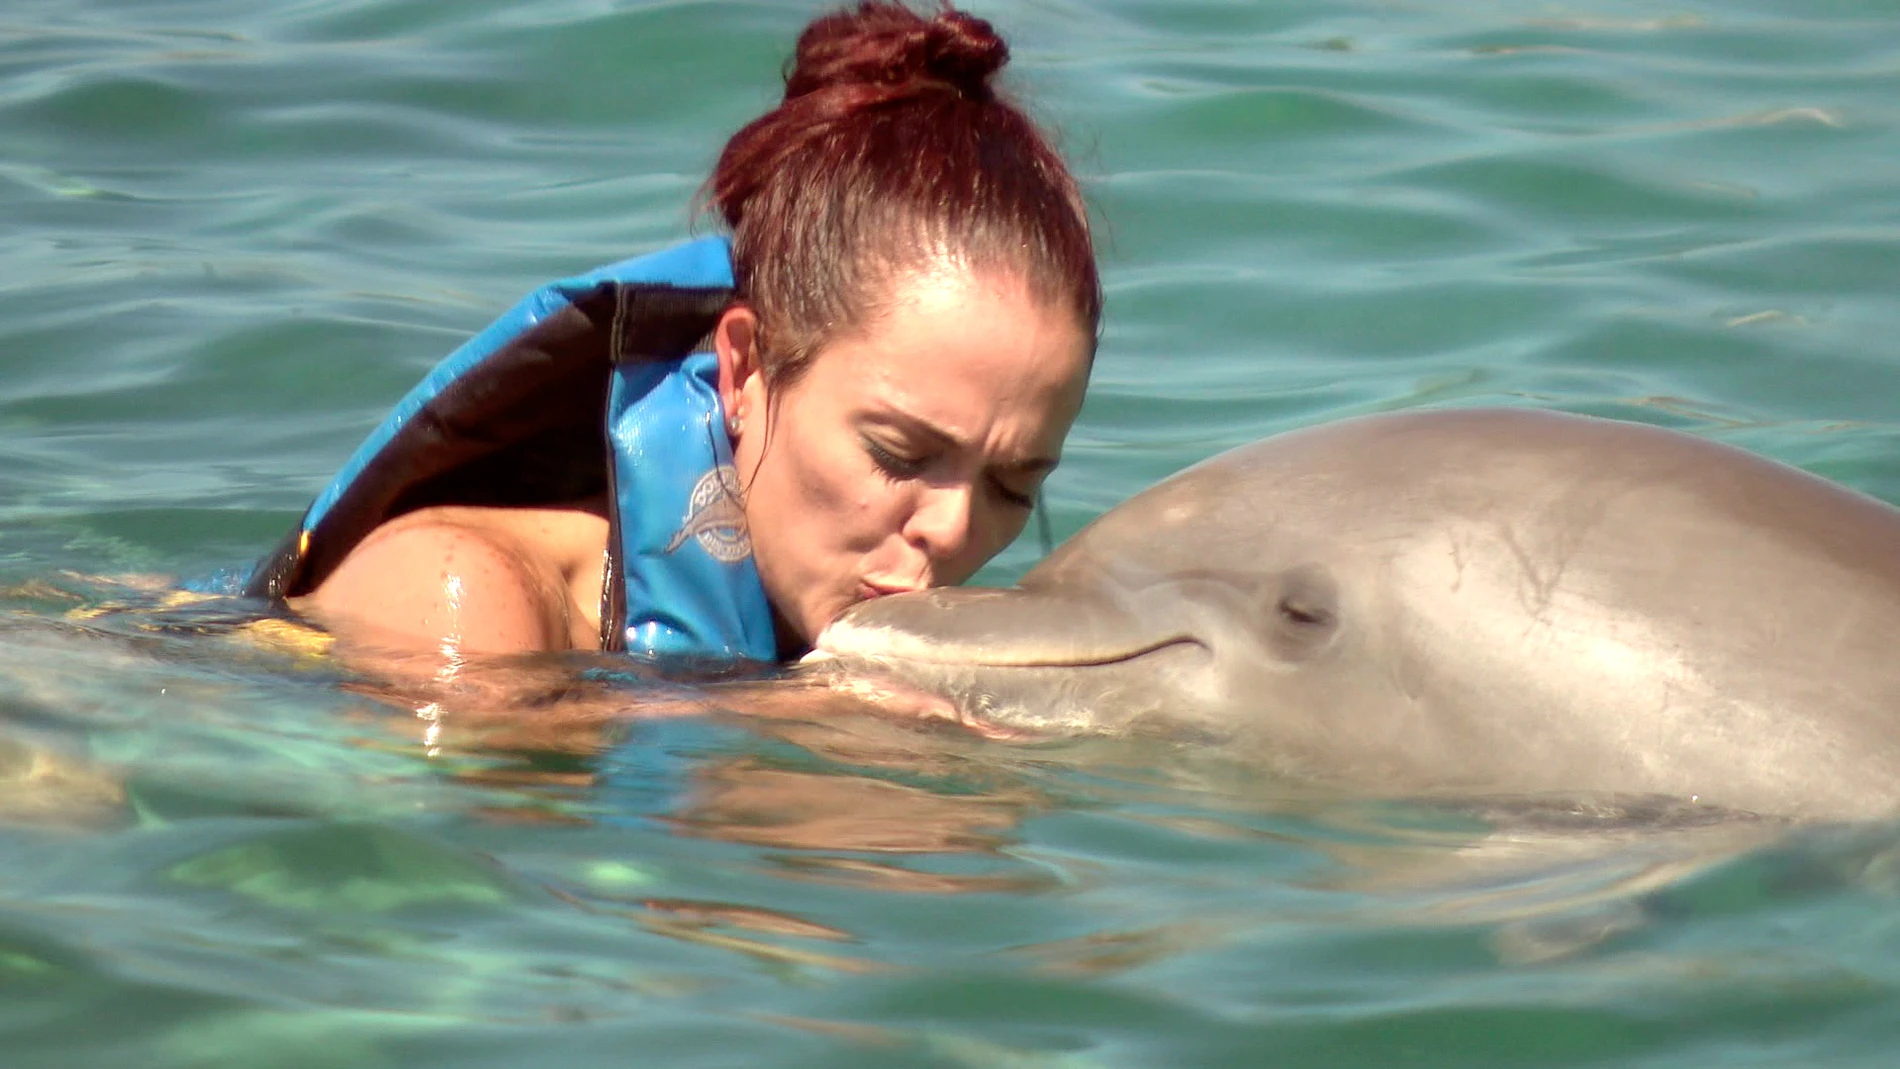 Marie da más besos a los delfines que a su marido